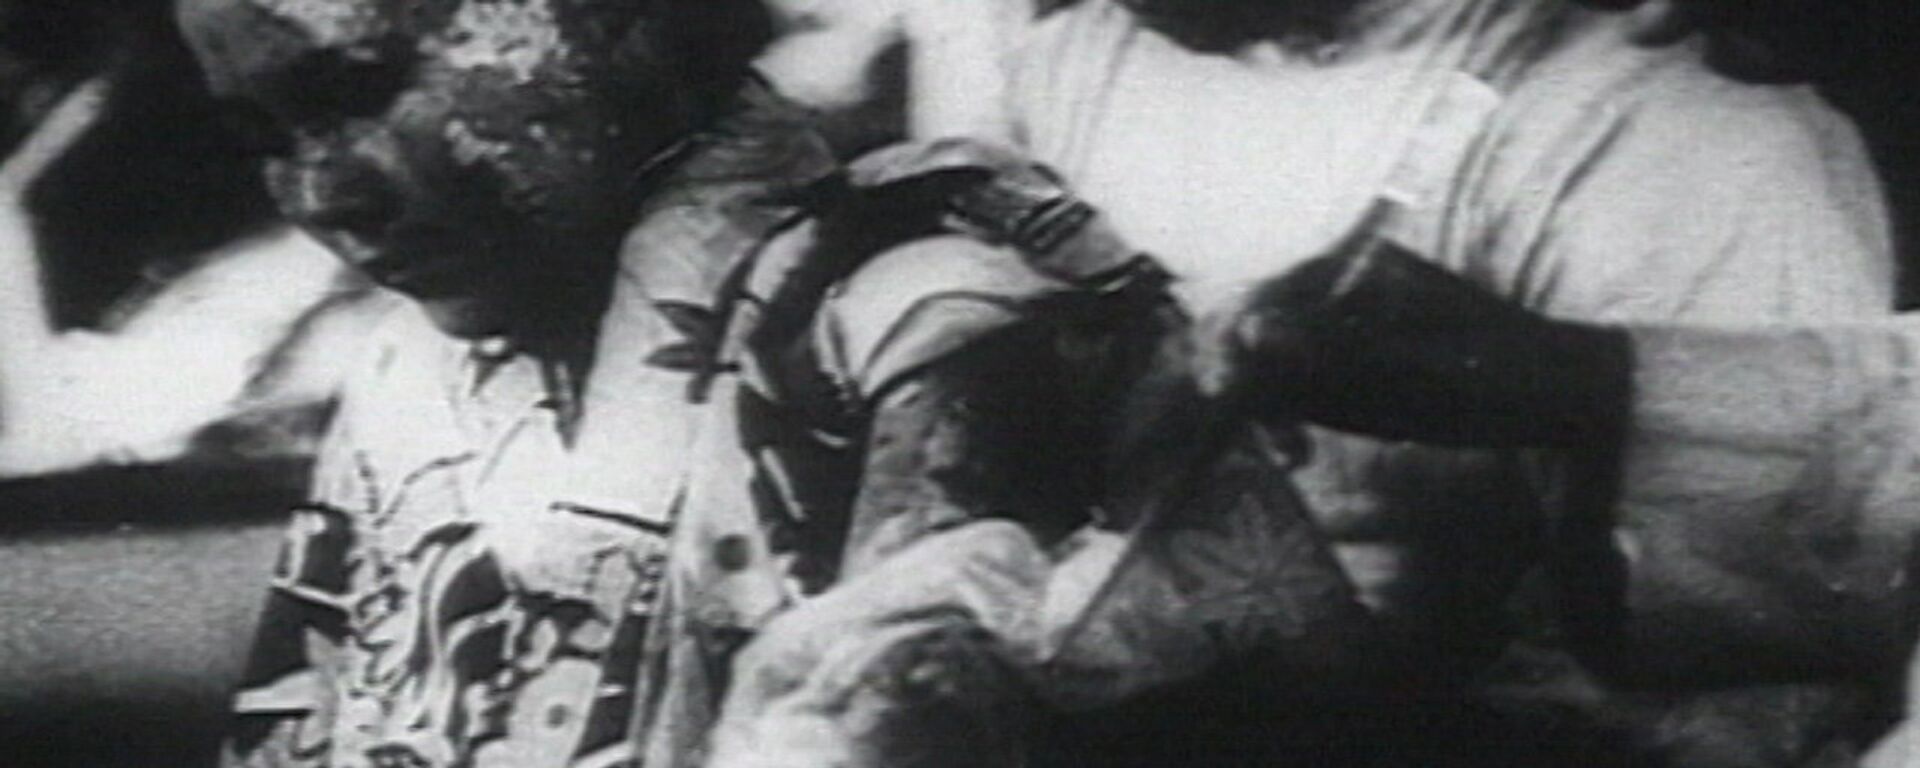 Спутник_Трагедия Хиросимы: атомный взрыв 6 августа 1945 года - Sputnik Узбекистан, 1920, 06.08.2020